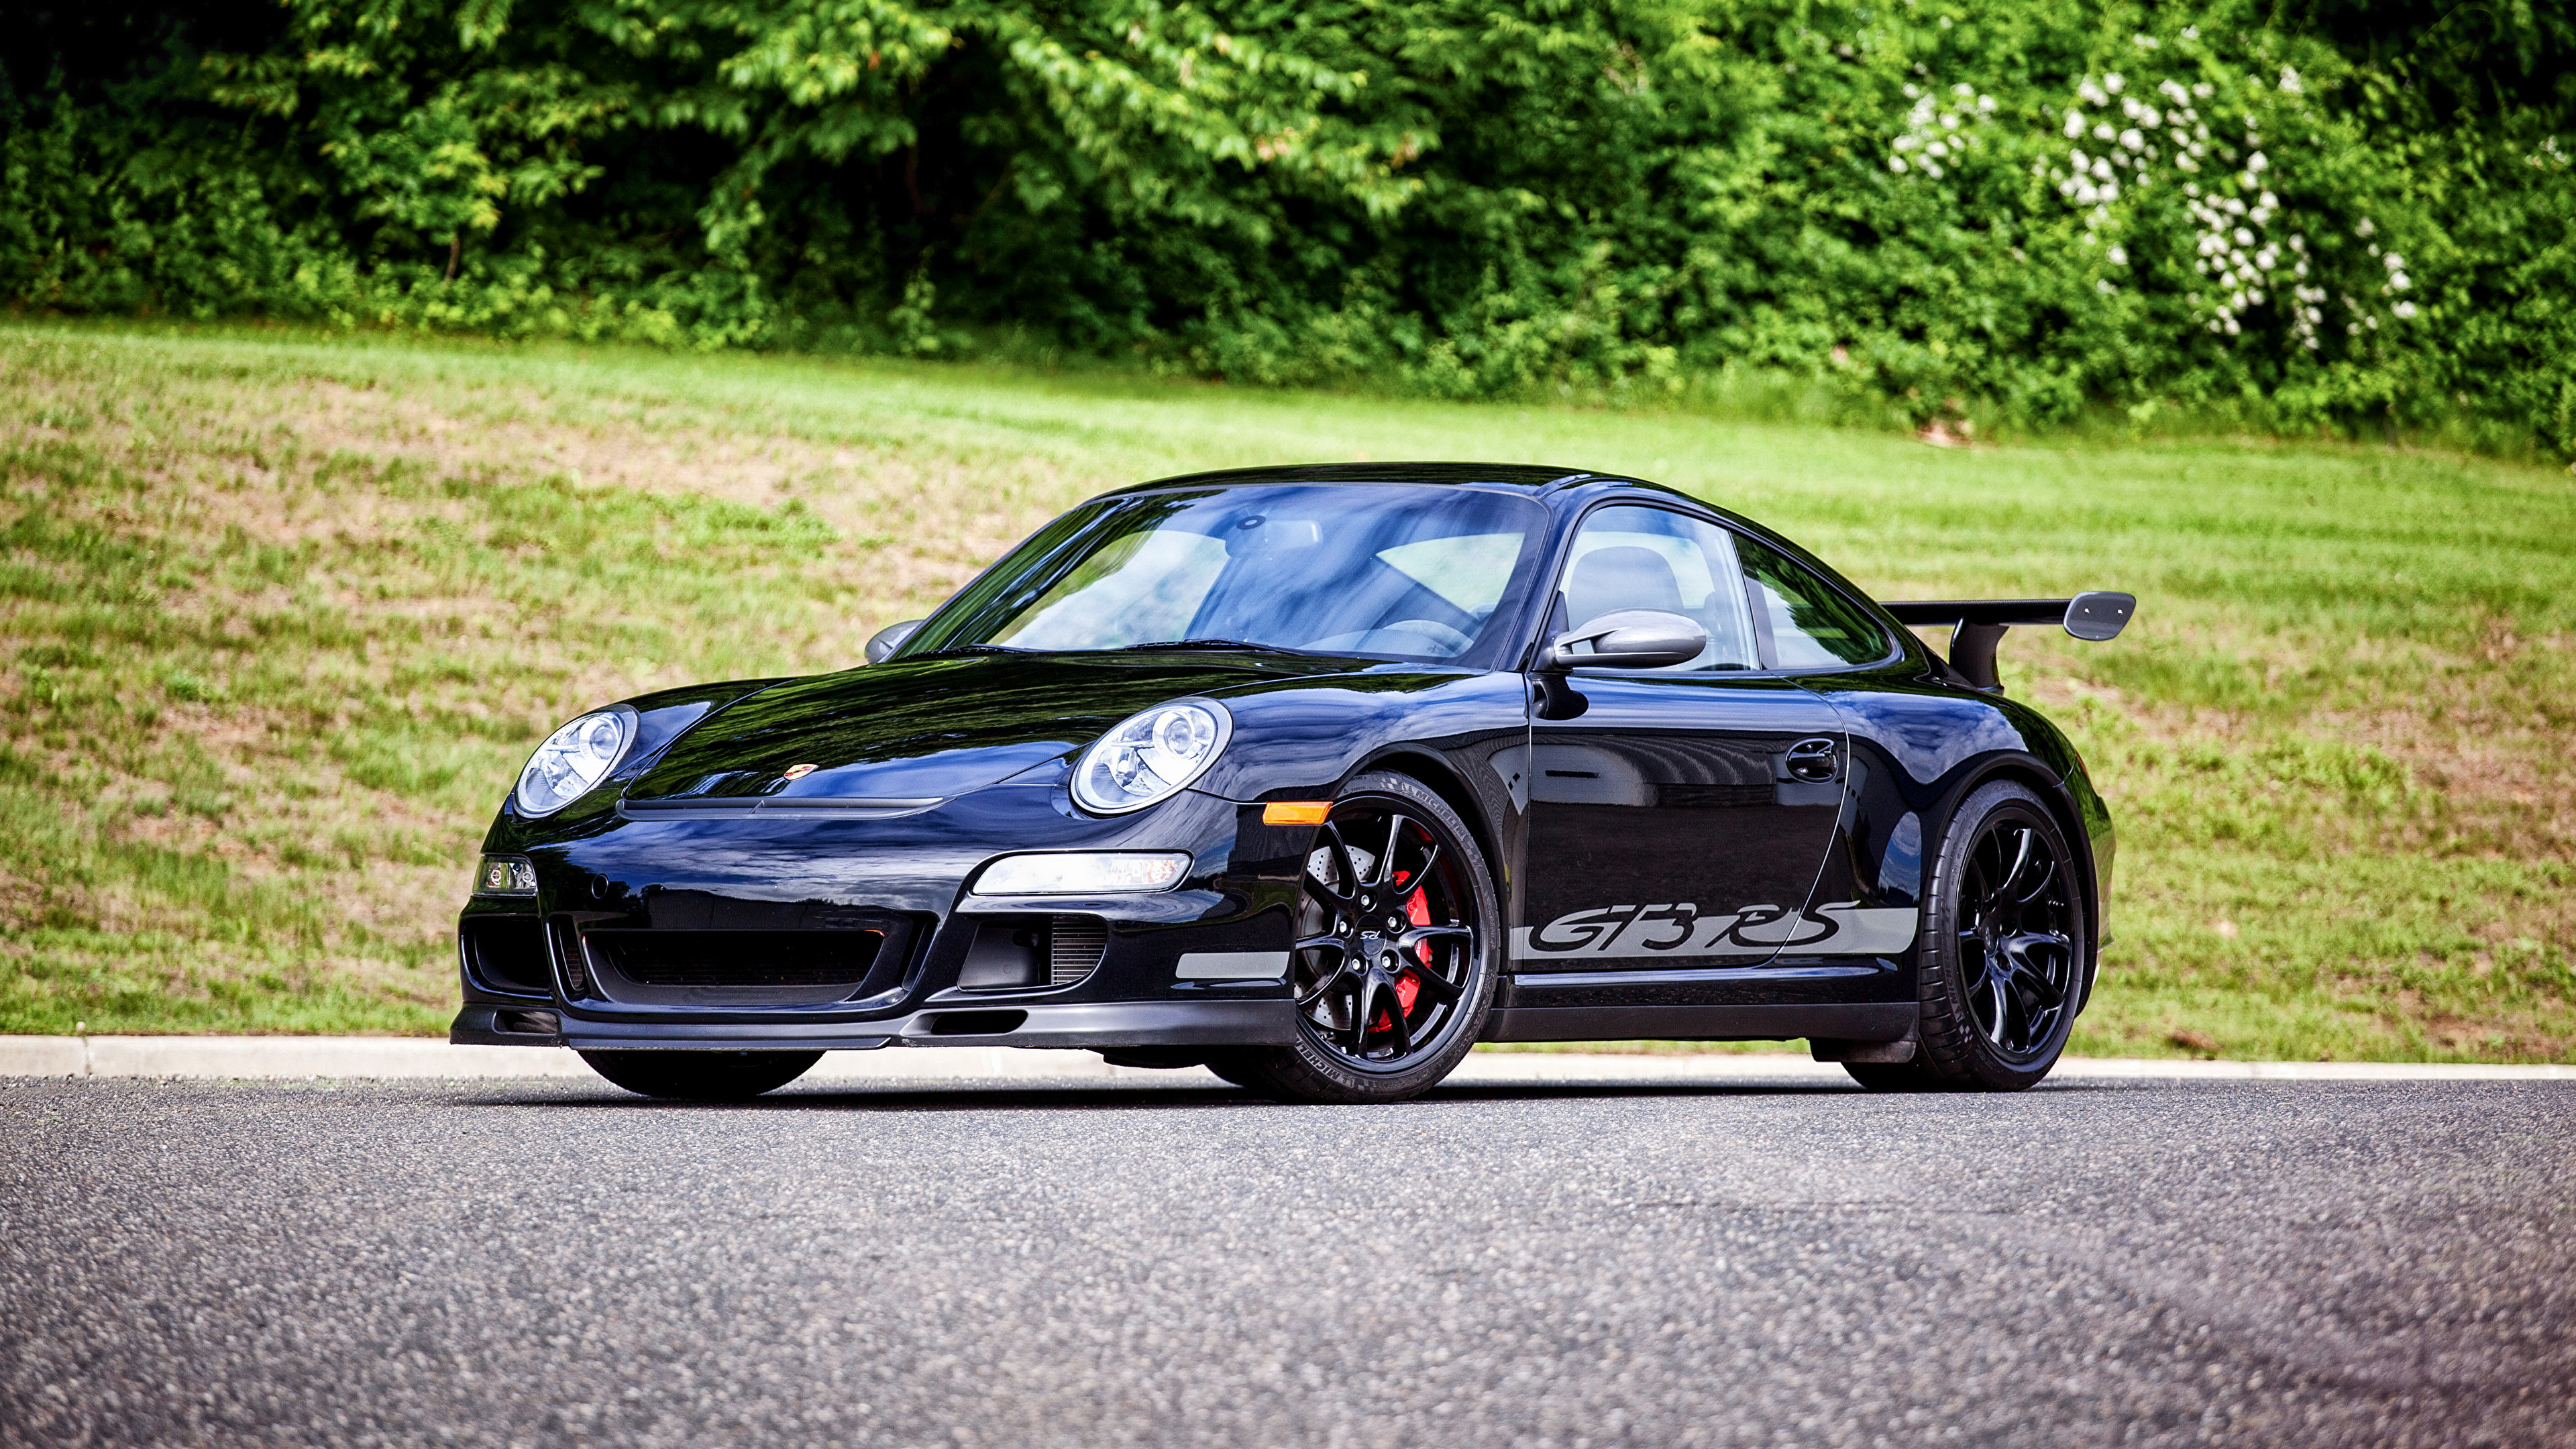 Black Porsche 911 on Road During Daytime. Wallpaper in 3840x2160 Resolution